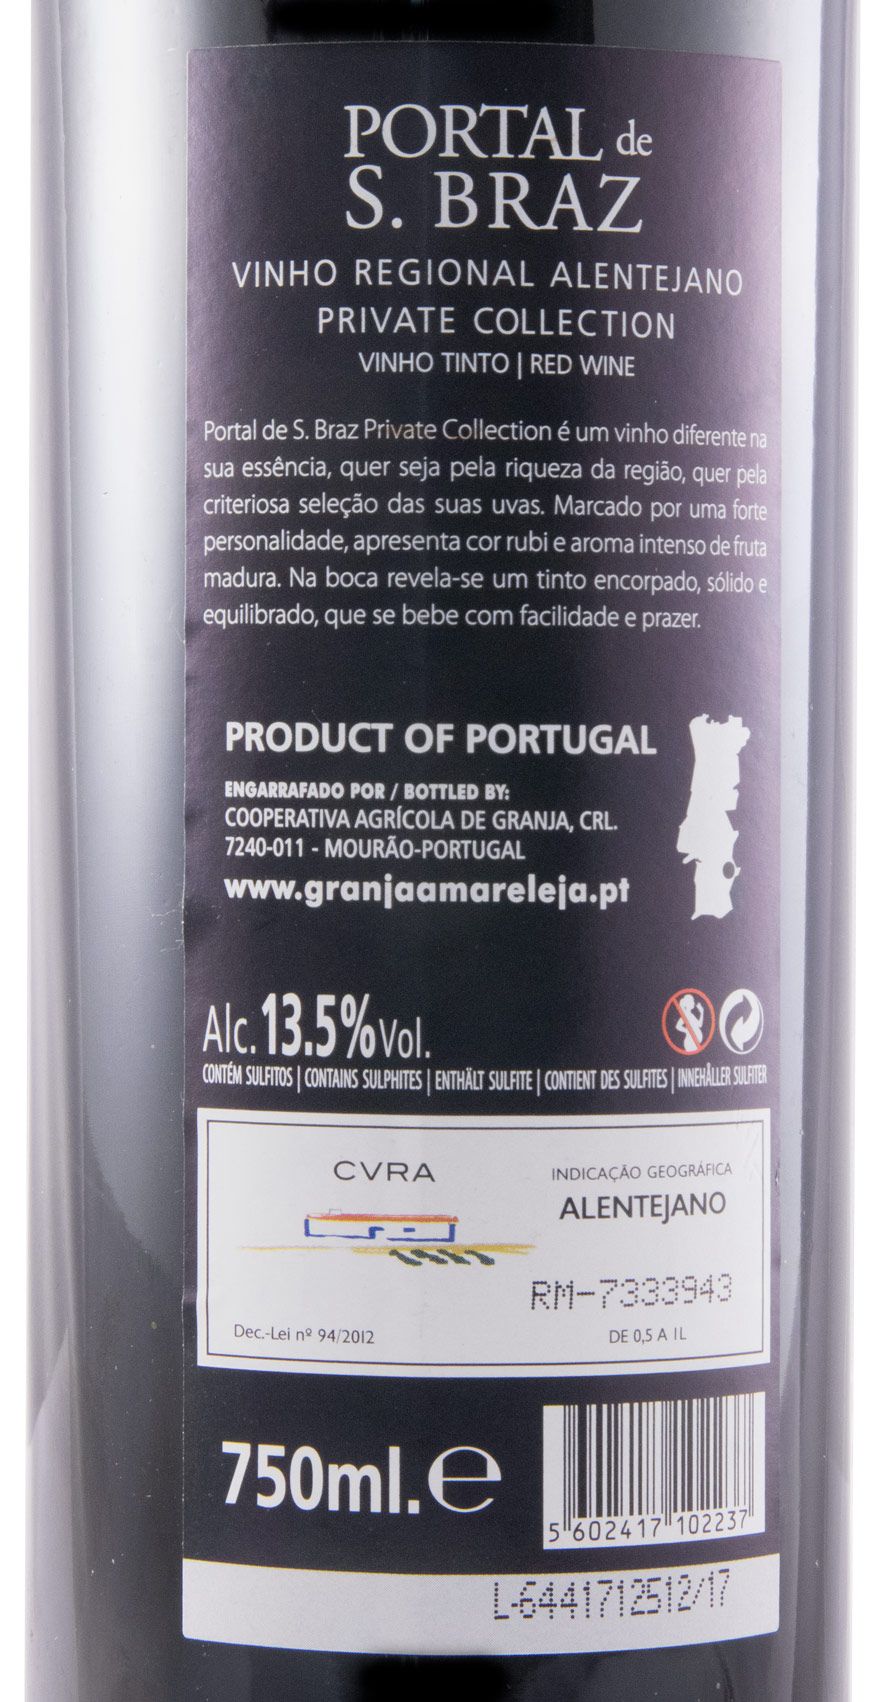 SÃO BRAZ Vinho Tinto Regional Alentejano Selection 750 ml